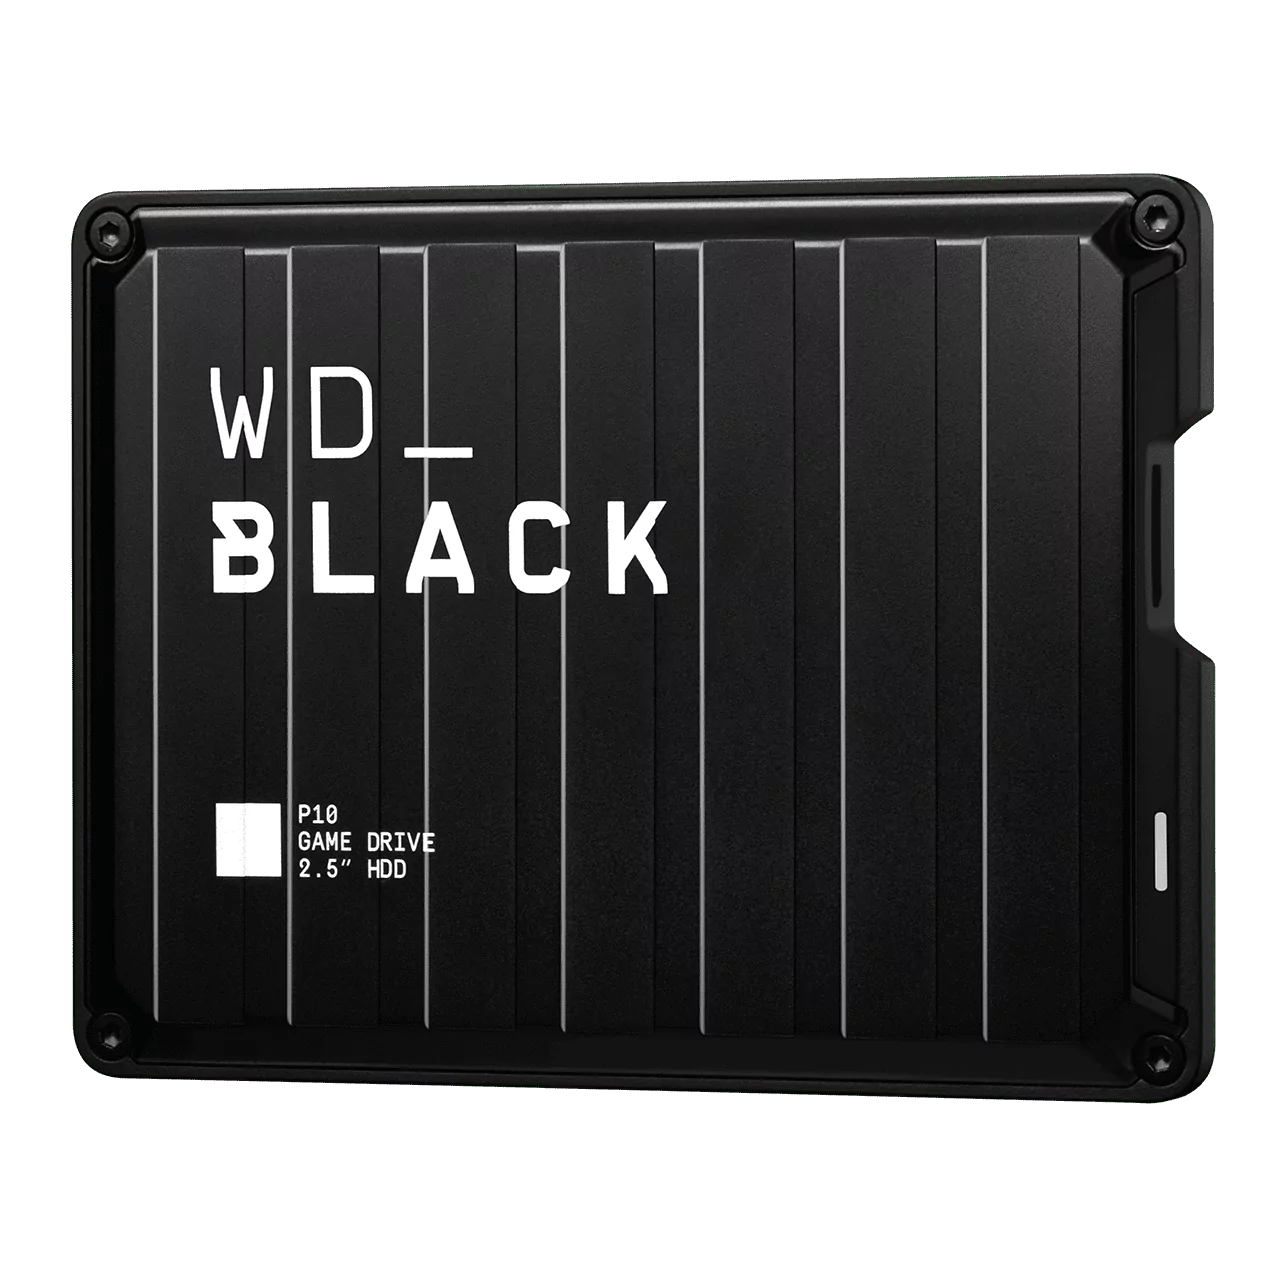 Внешний жесткий диск WD BLACK P10 Game Drive 2 ТБ для игровых косолей и ПК 6